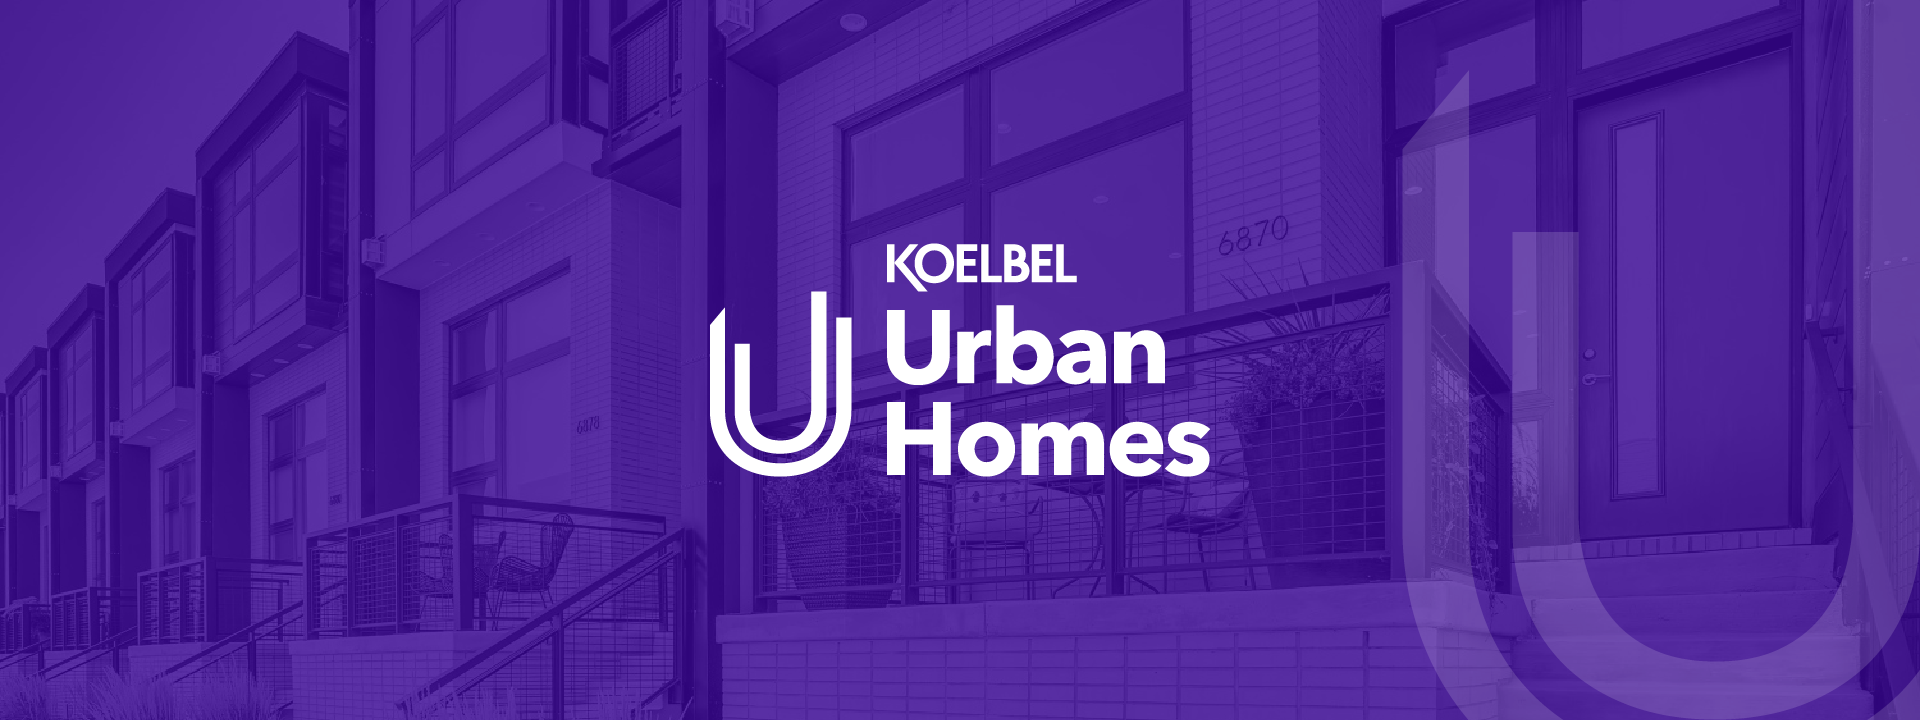 Koelbel Urban Homes Brand Awareness Campaign